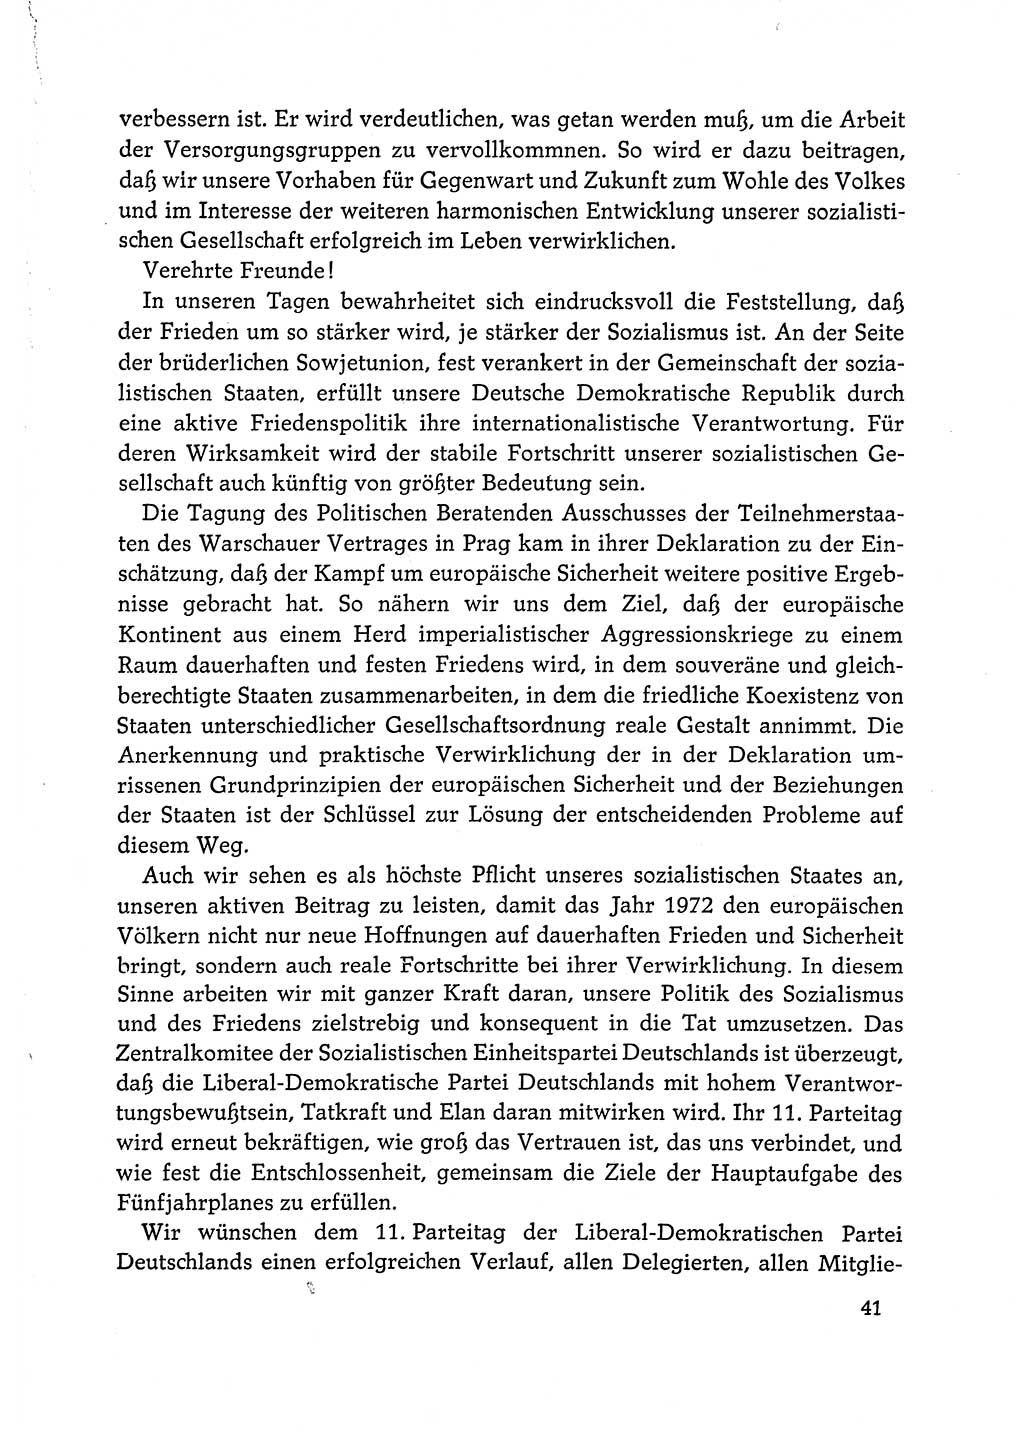 Dokumente der Sozialistischen Einheitspartei Deutschlands (SED) [Deutsche Demokratische Republik (DDR)] 1972-1973, Seite 41 (Dok. SED DDR 1972-1973, S. 41)